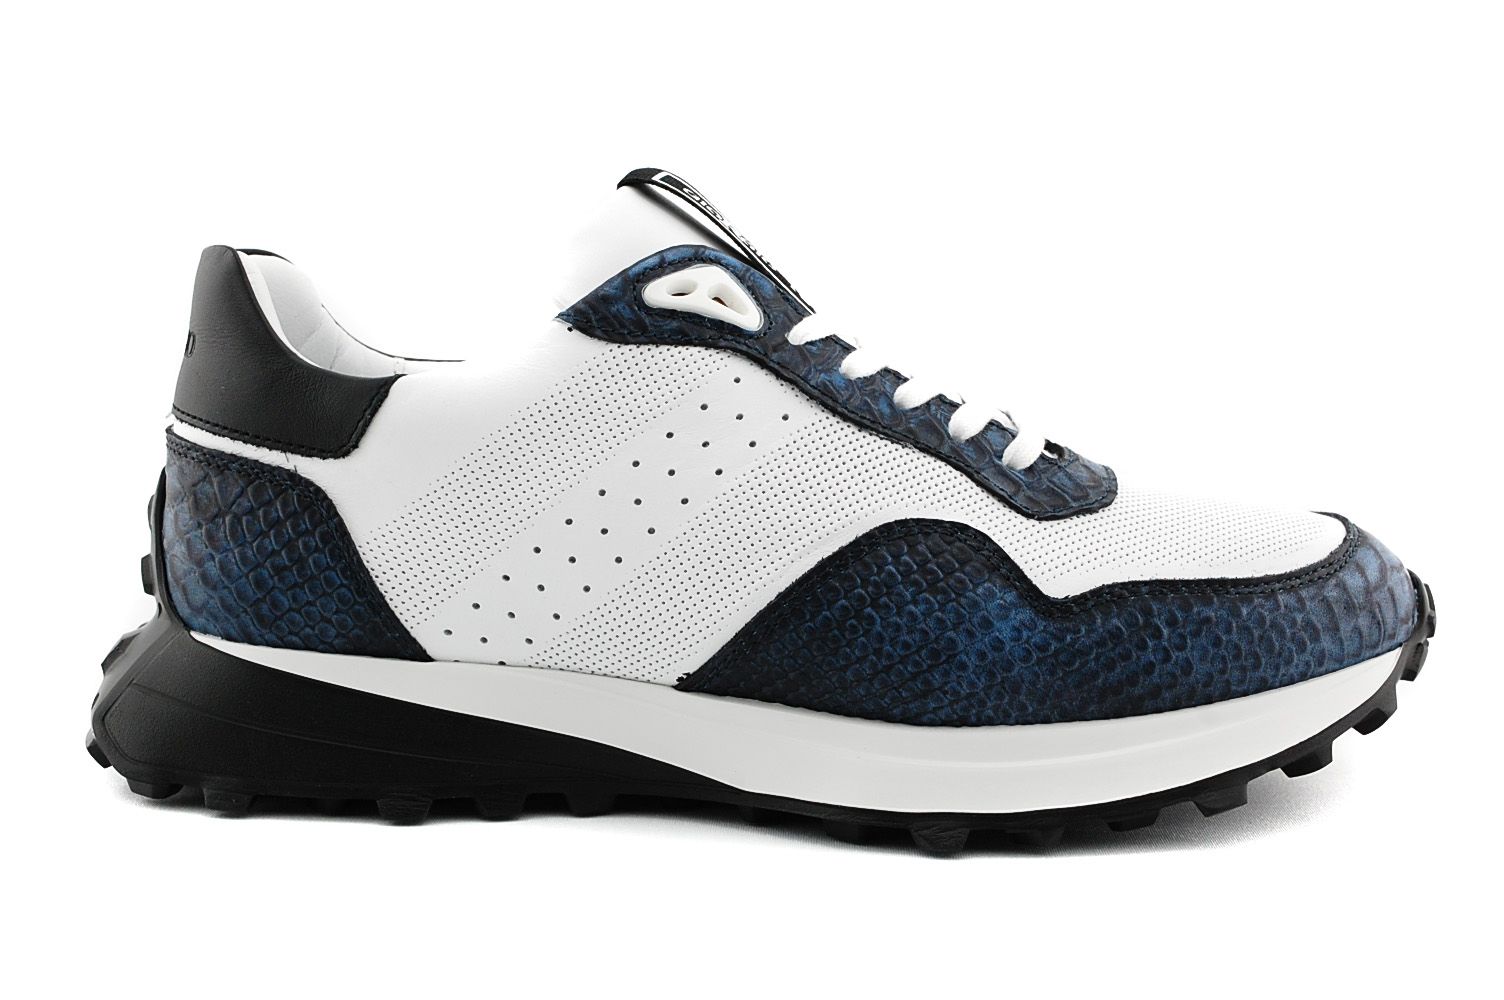 kan zijn overschreden kalligrafie Giorgio 02705 sneaker wit blauw croco combi online kopen bij Past Schoenen.